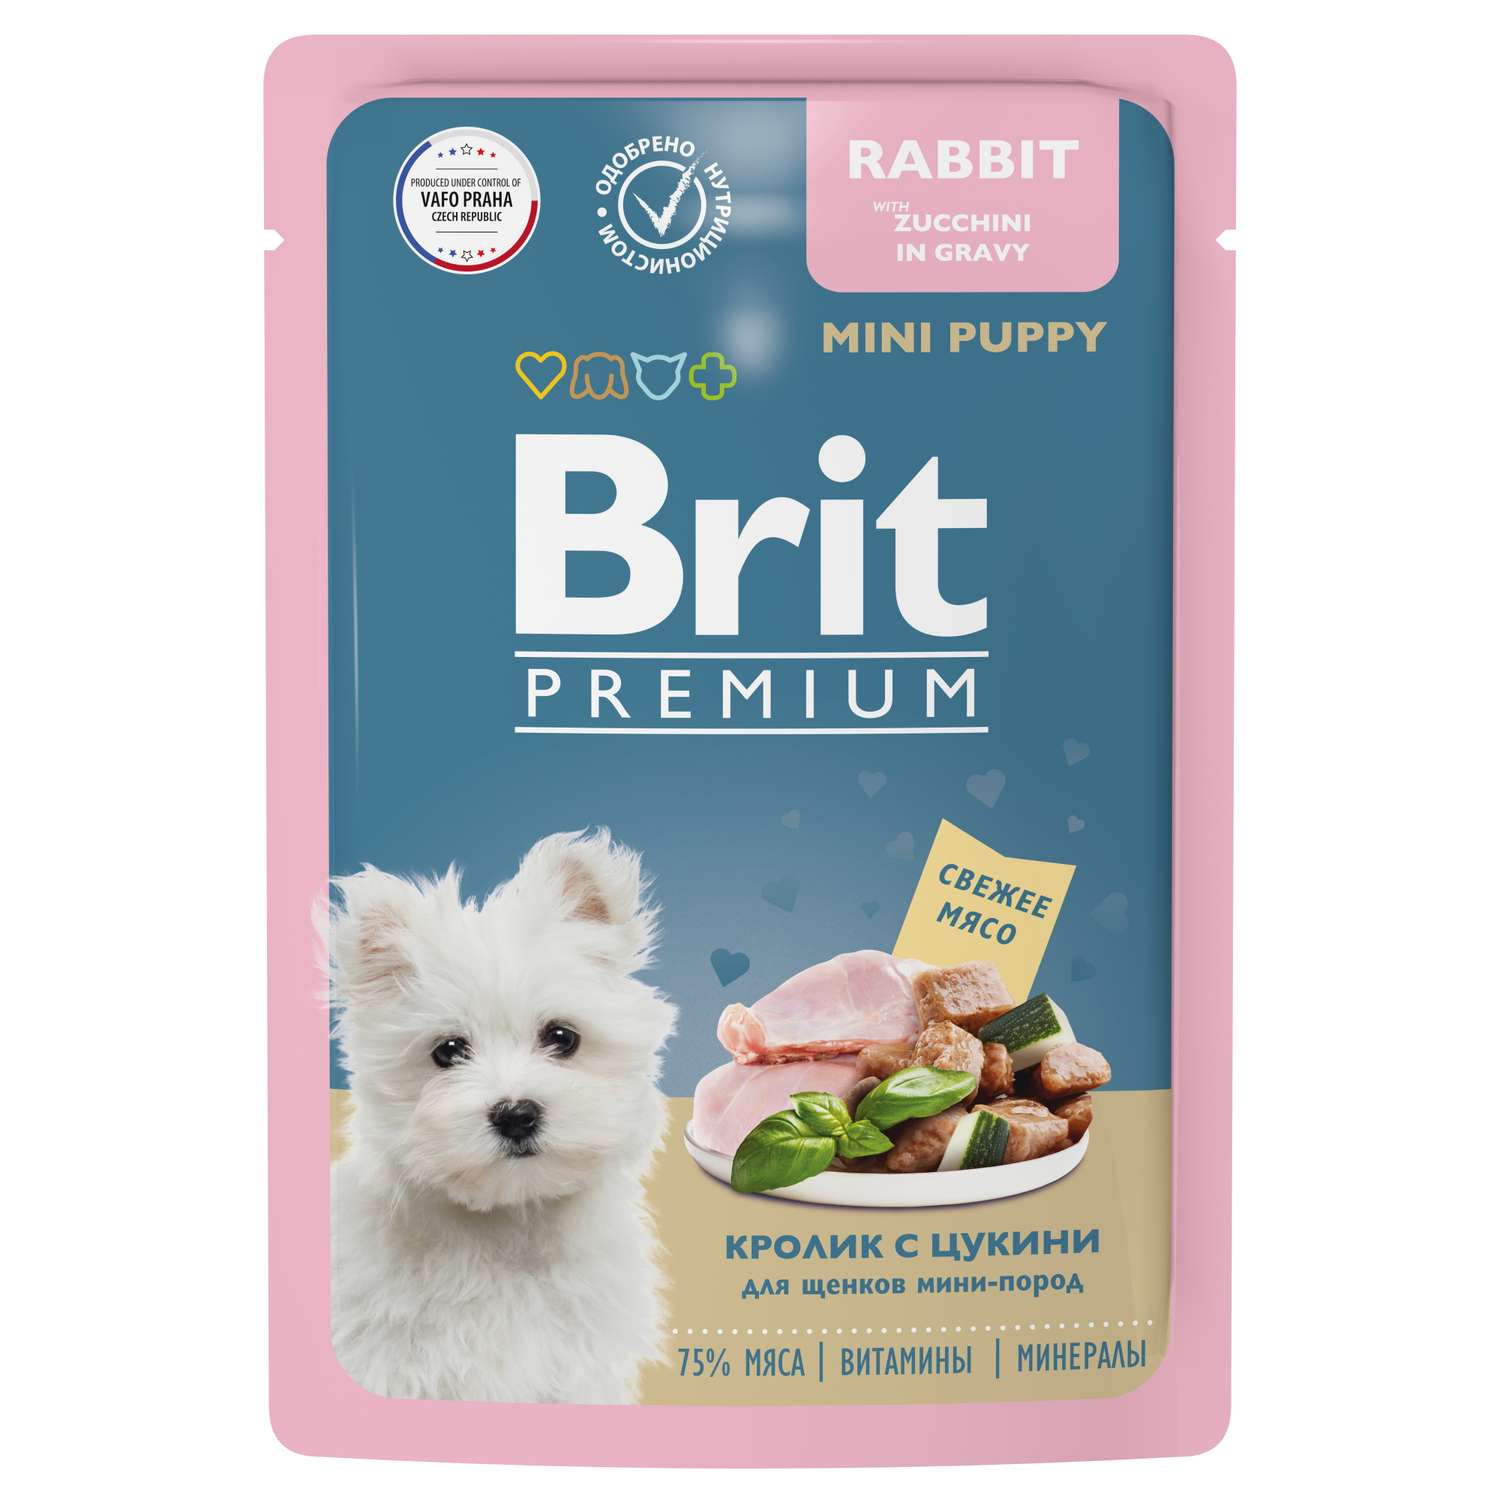 Корм для щенков Brit 85г Premium Dog миниатюрных пород кролик с цукини в соусе - фото 1